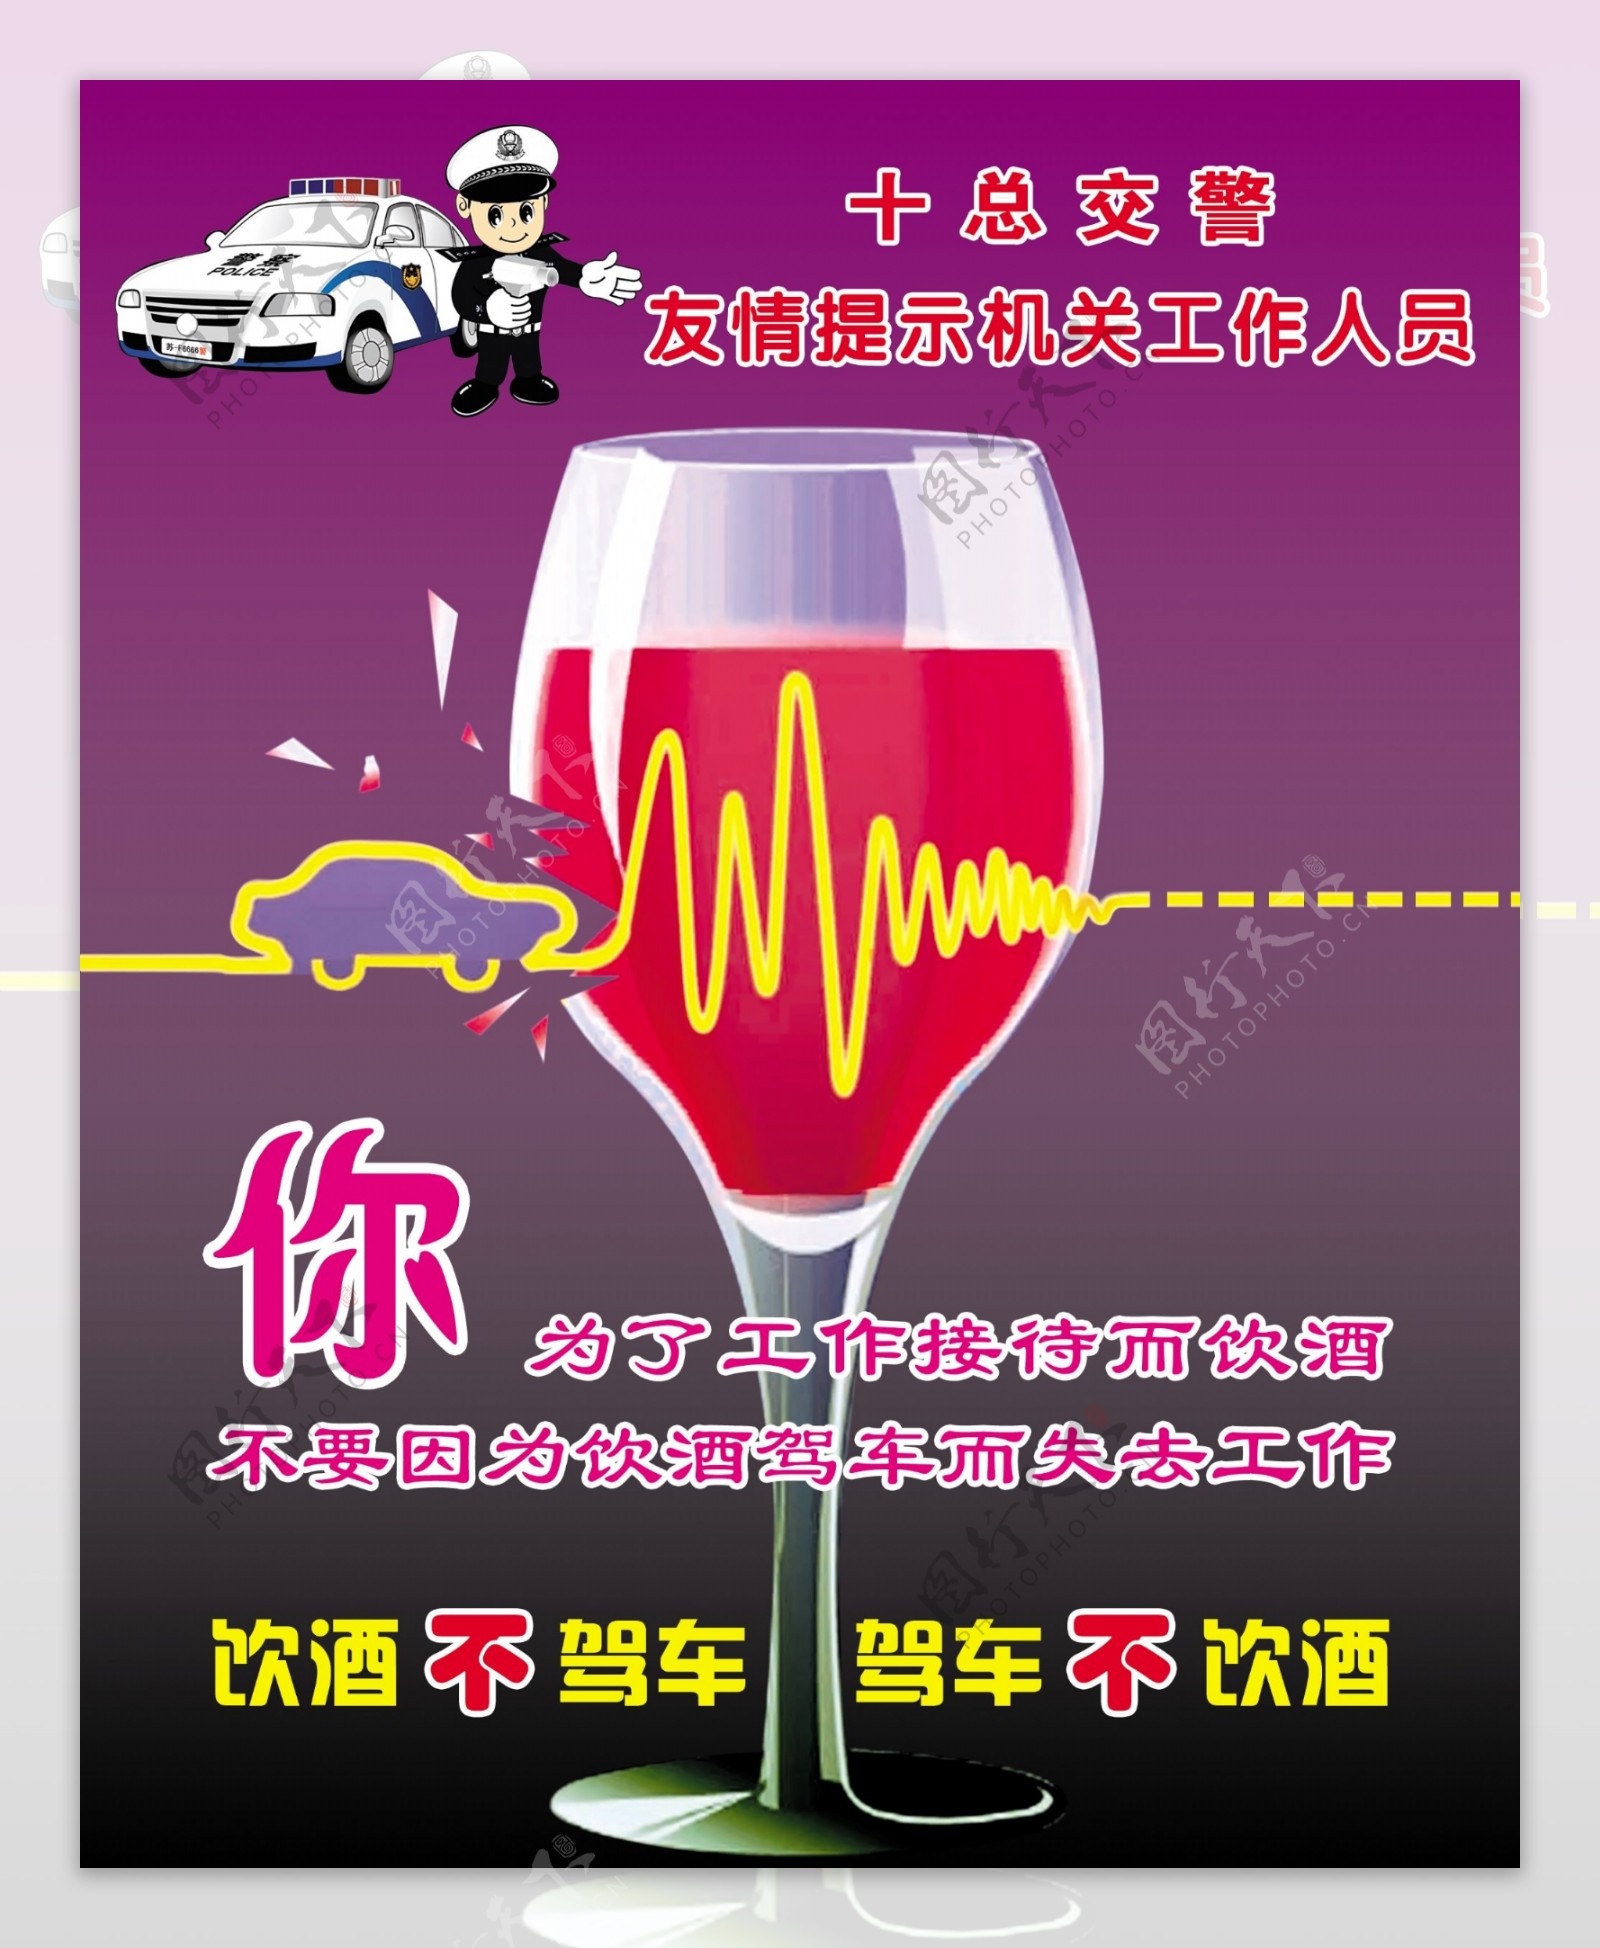 交通安全宣传禁止酒后驾驶图片